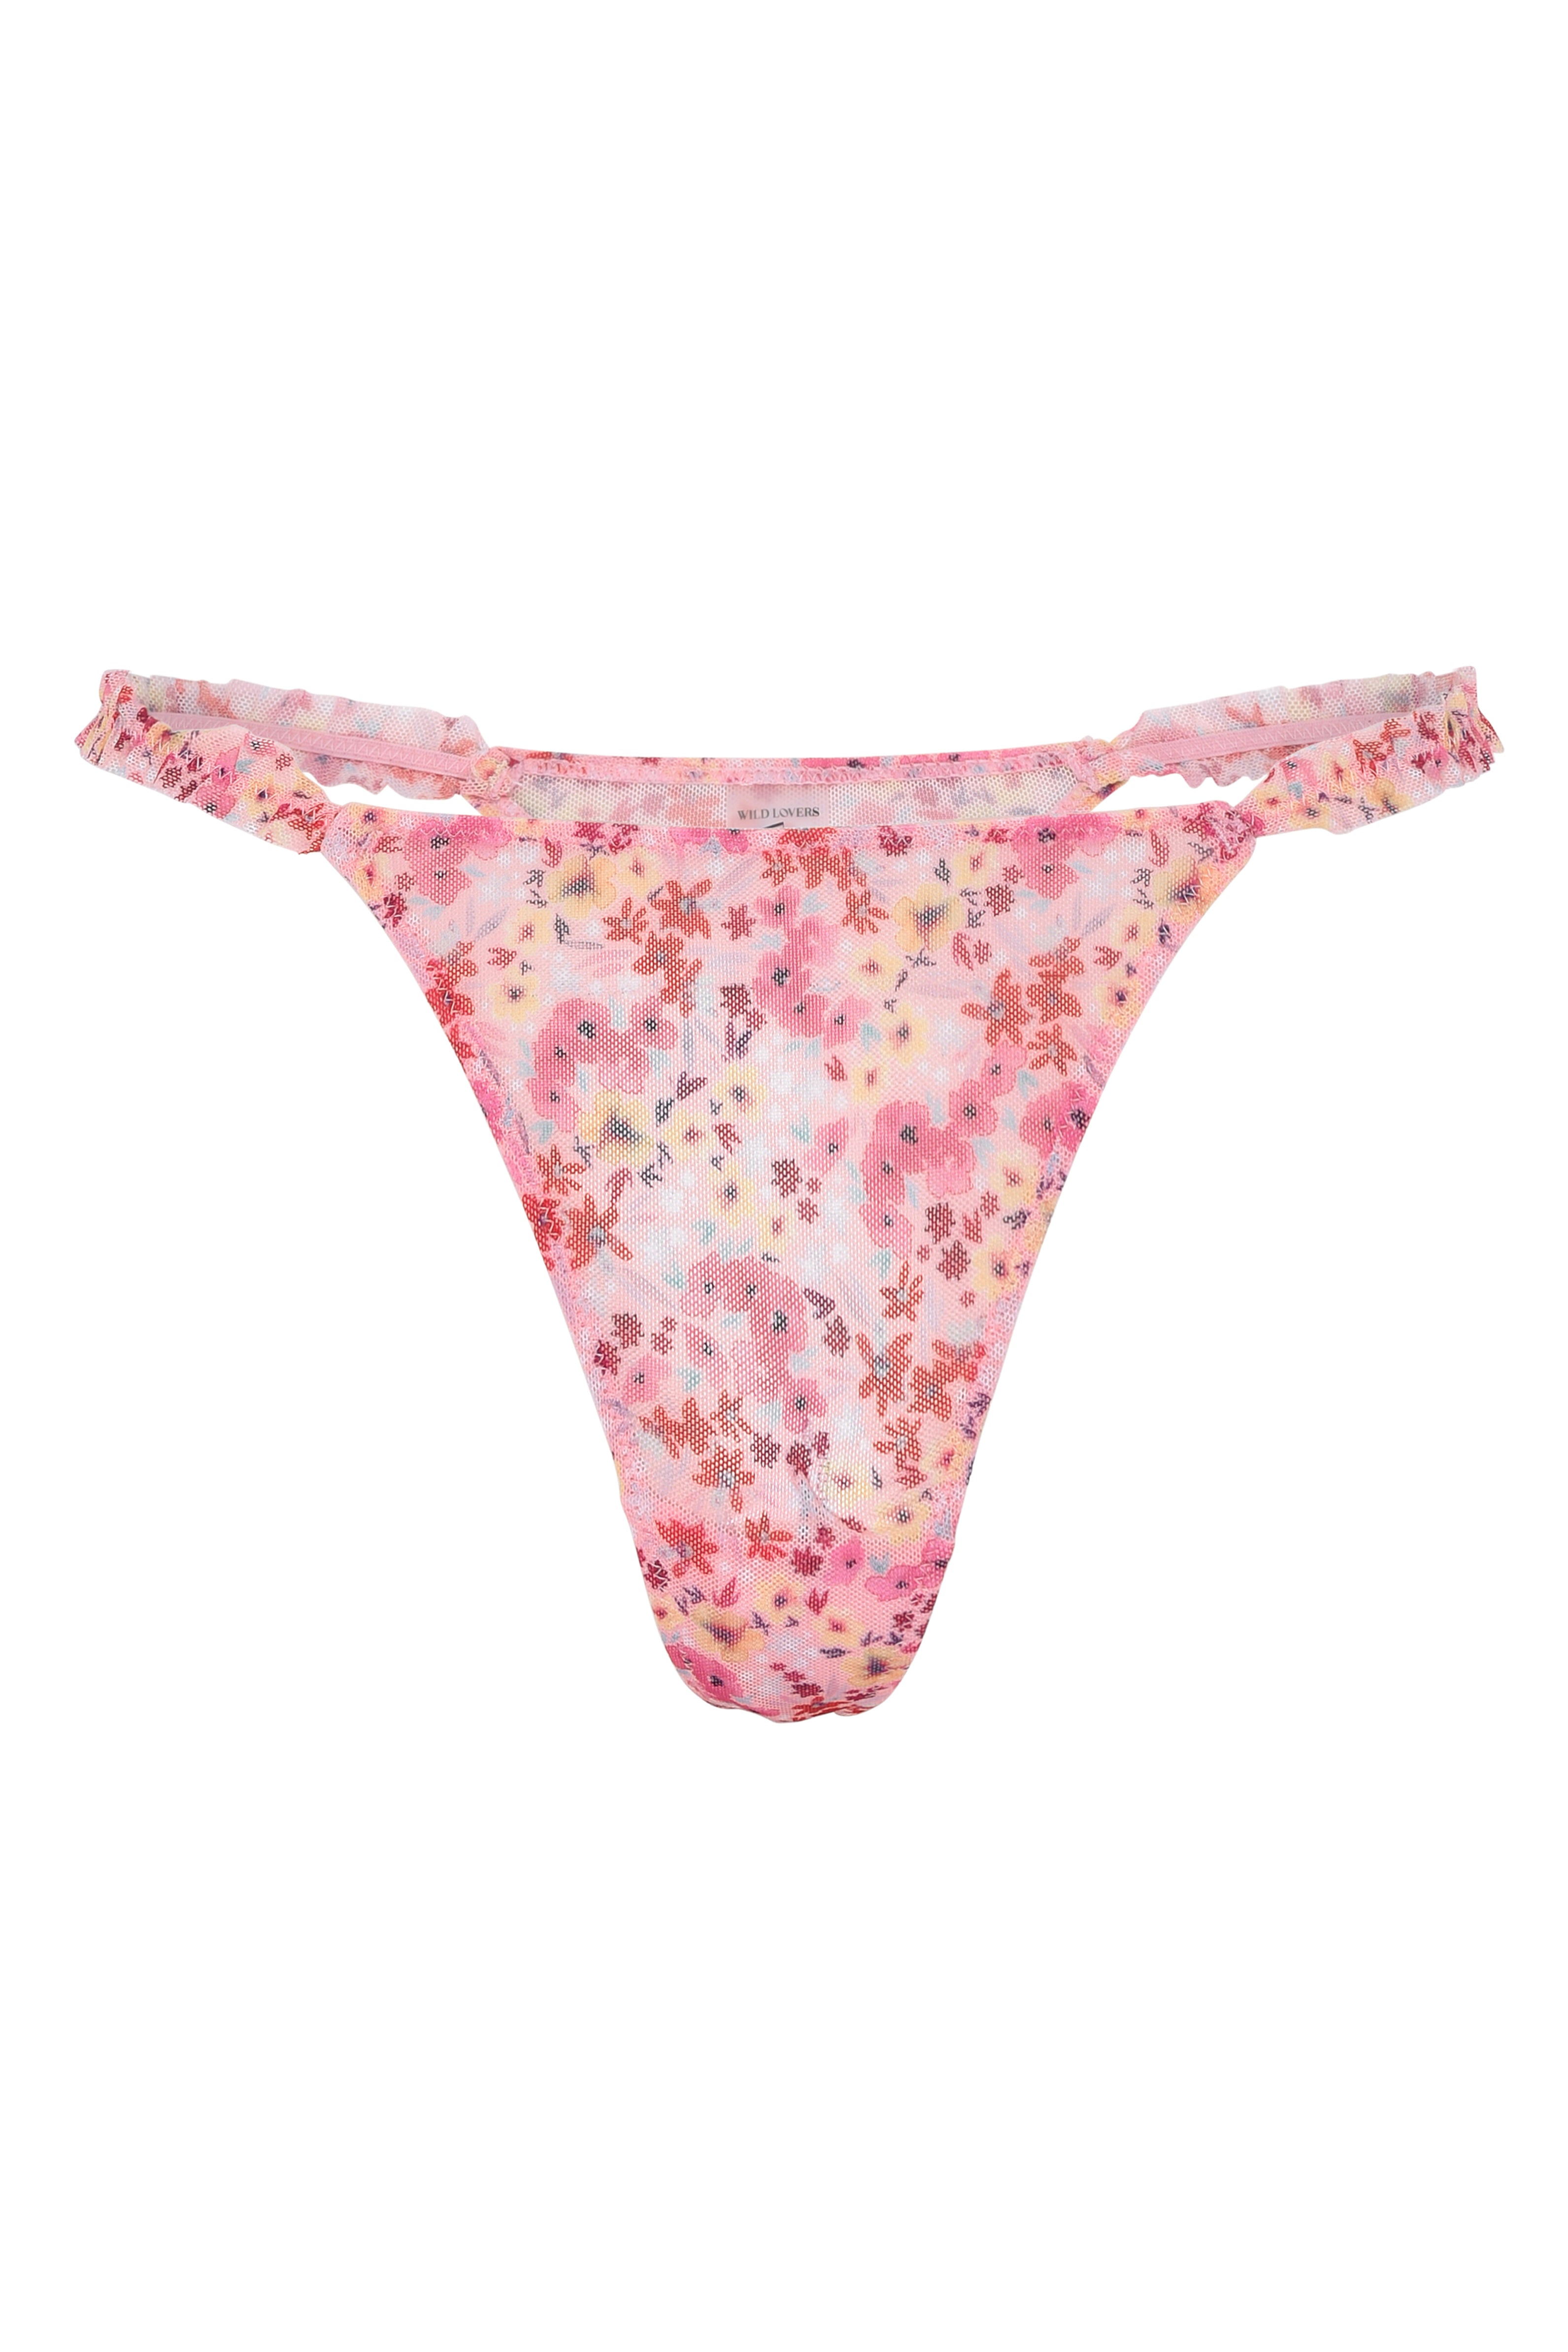 ELEONOR Brief Panties, Linen Knickers, Linen Underwear -  Sweden